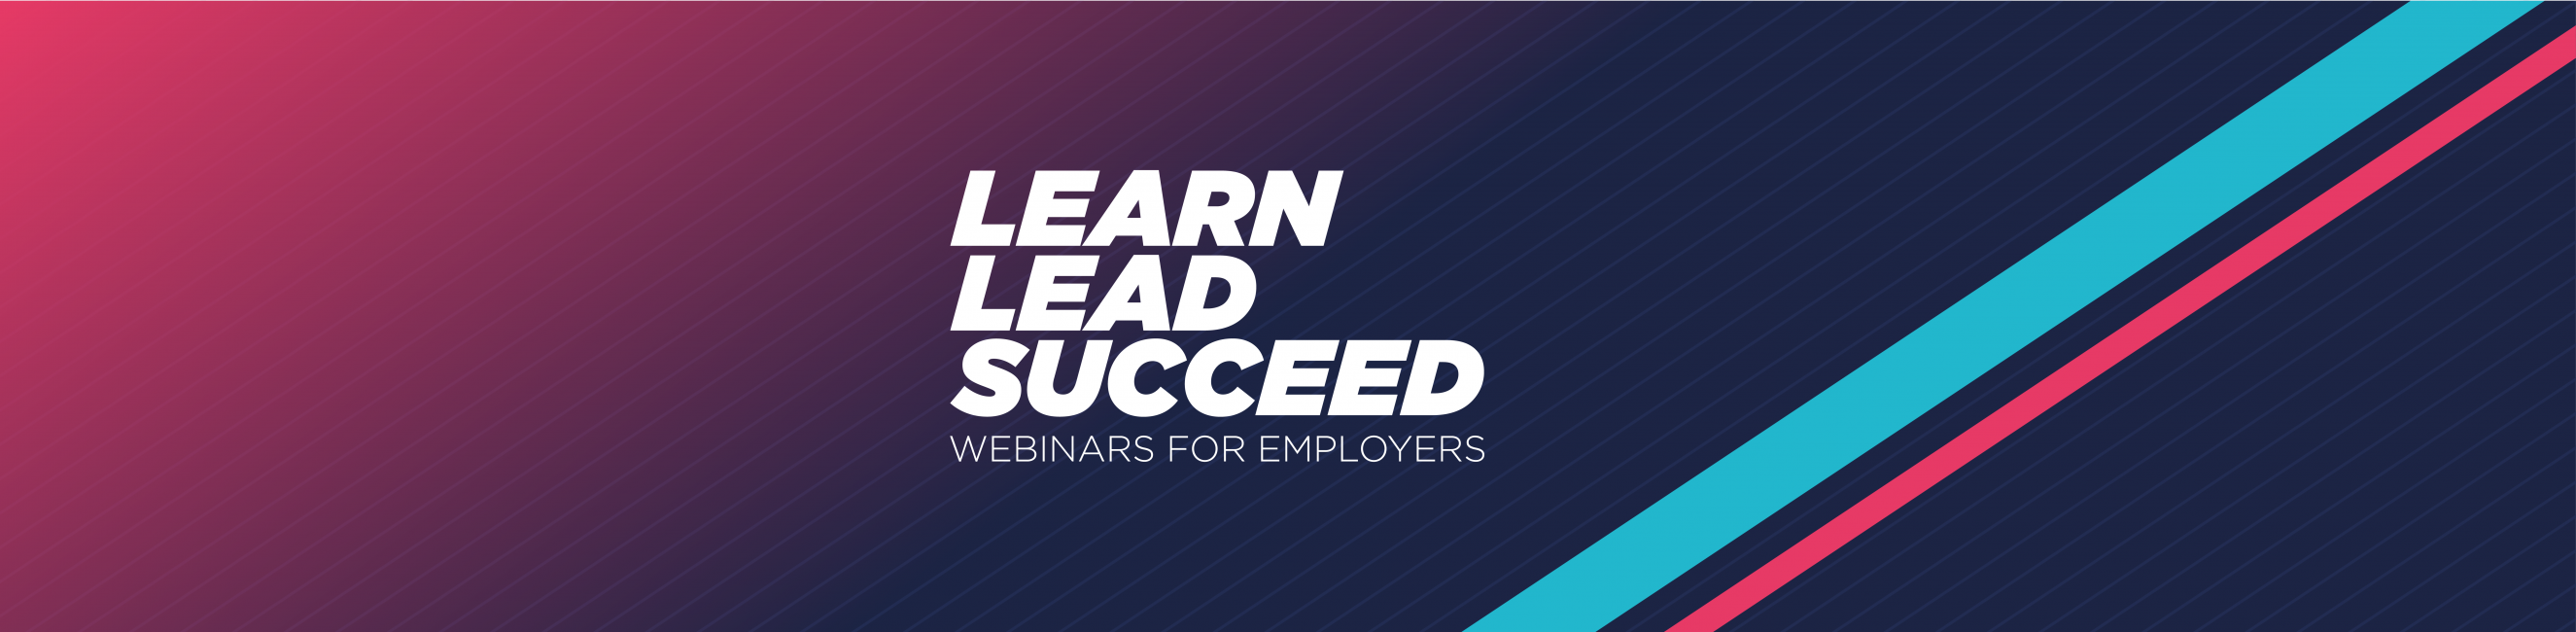 Learn, Lead, Succeed - webinars for employers